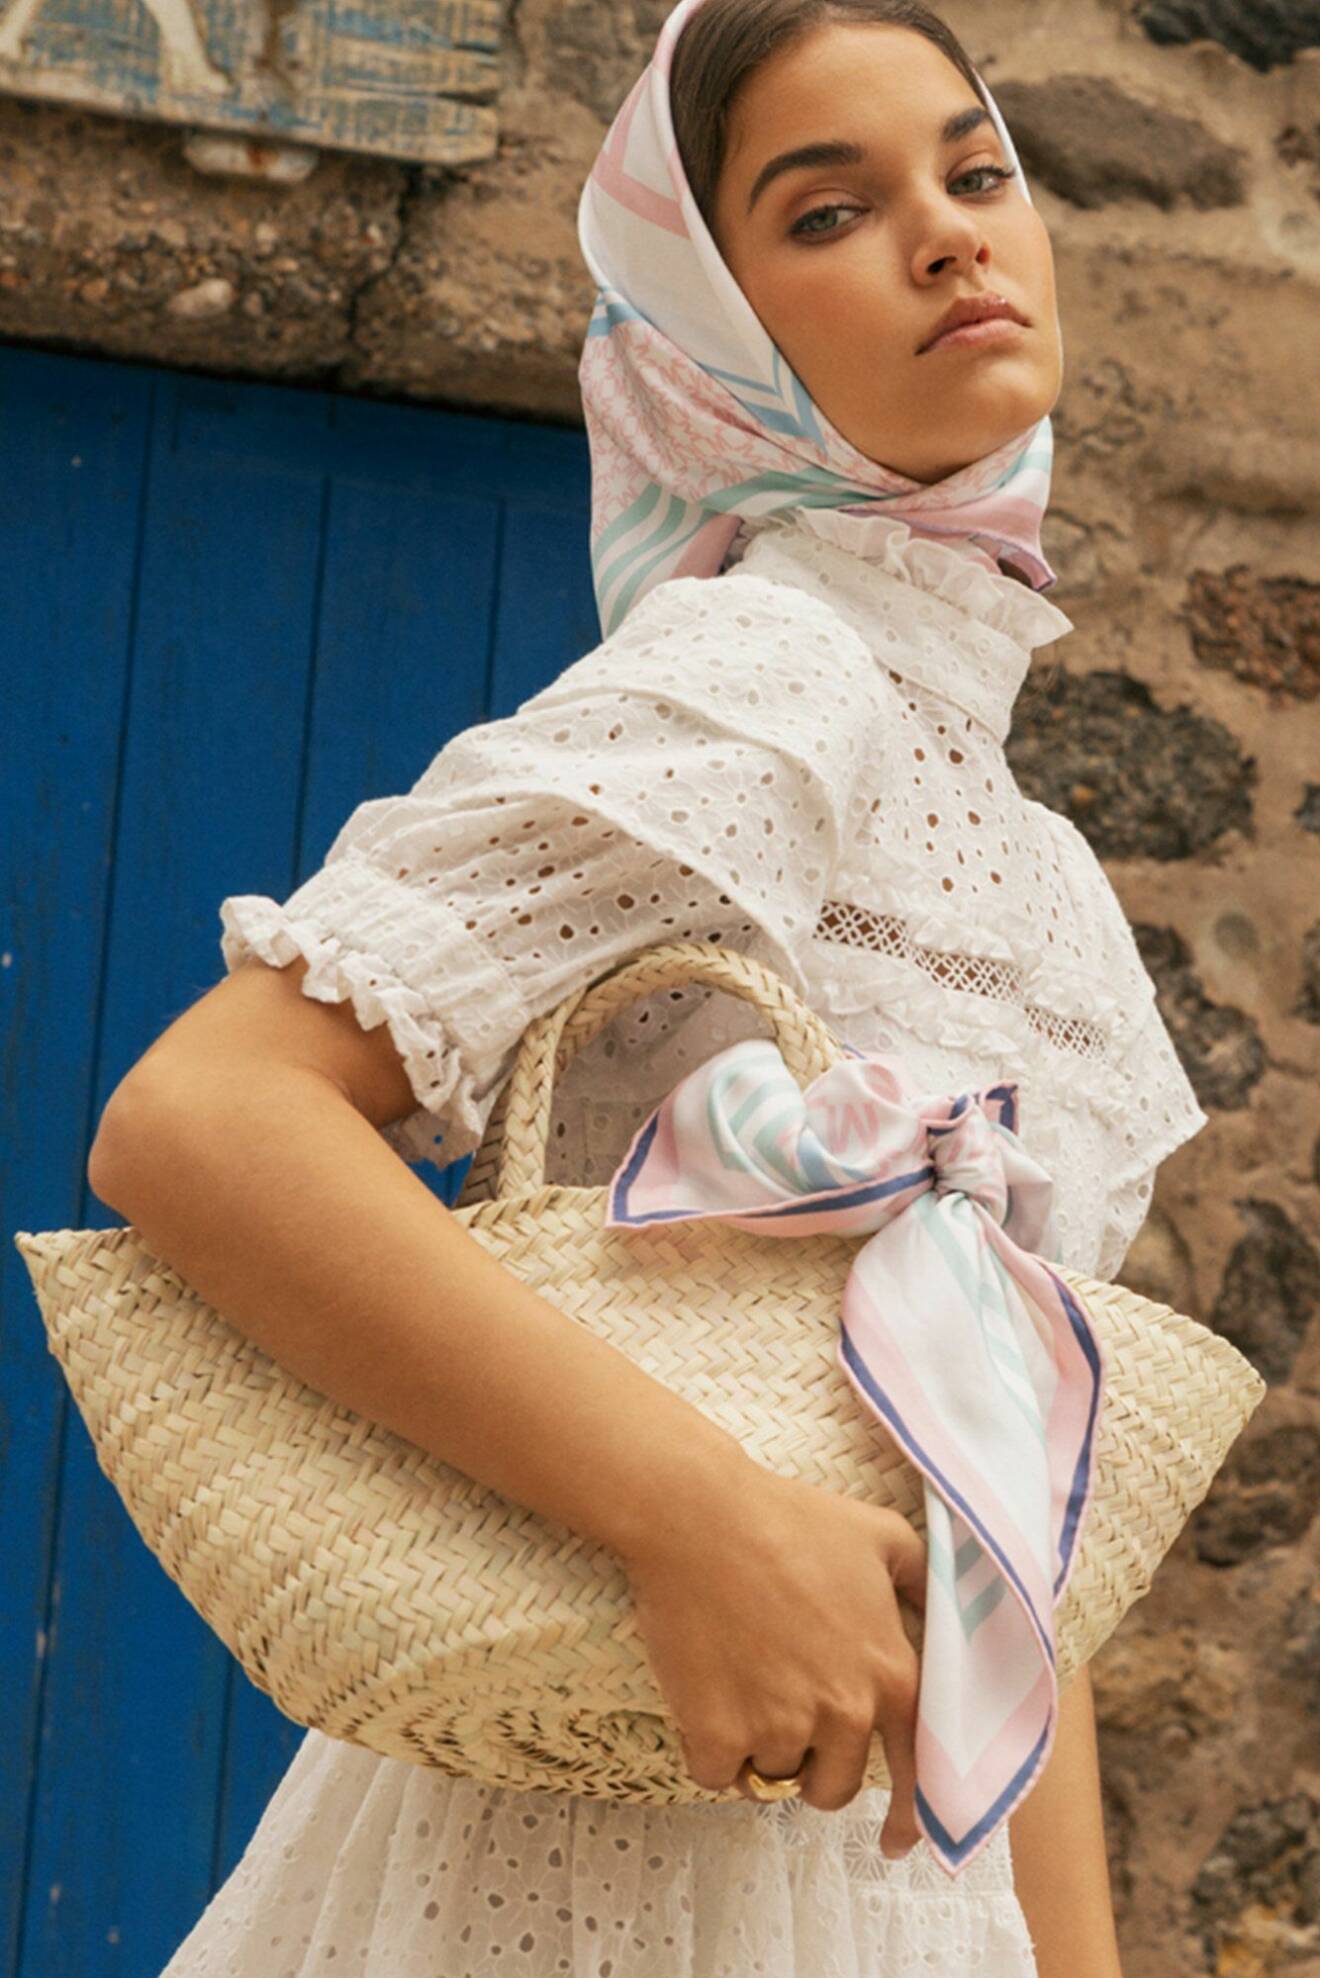 Modell med scarf runt huvudet och knuten runt stråväskan. Scarf i vitt och pasteller från By Malina.